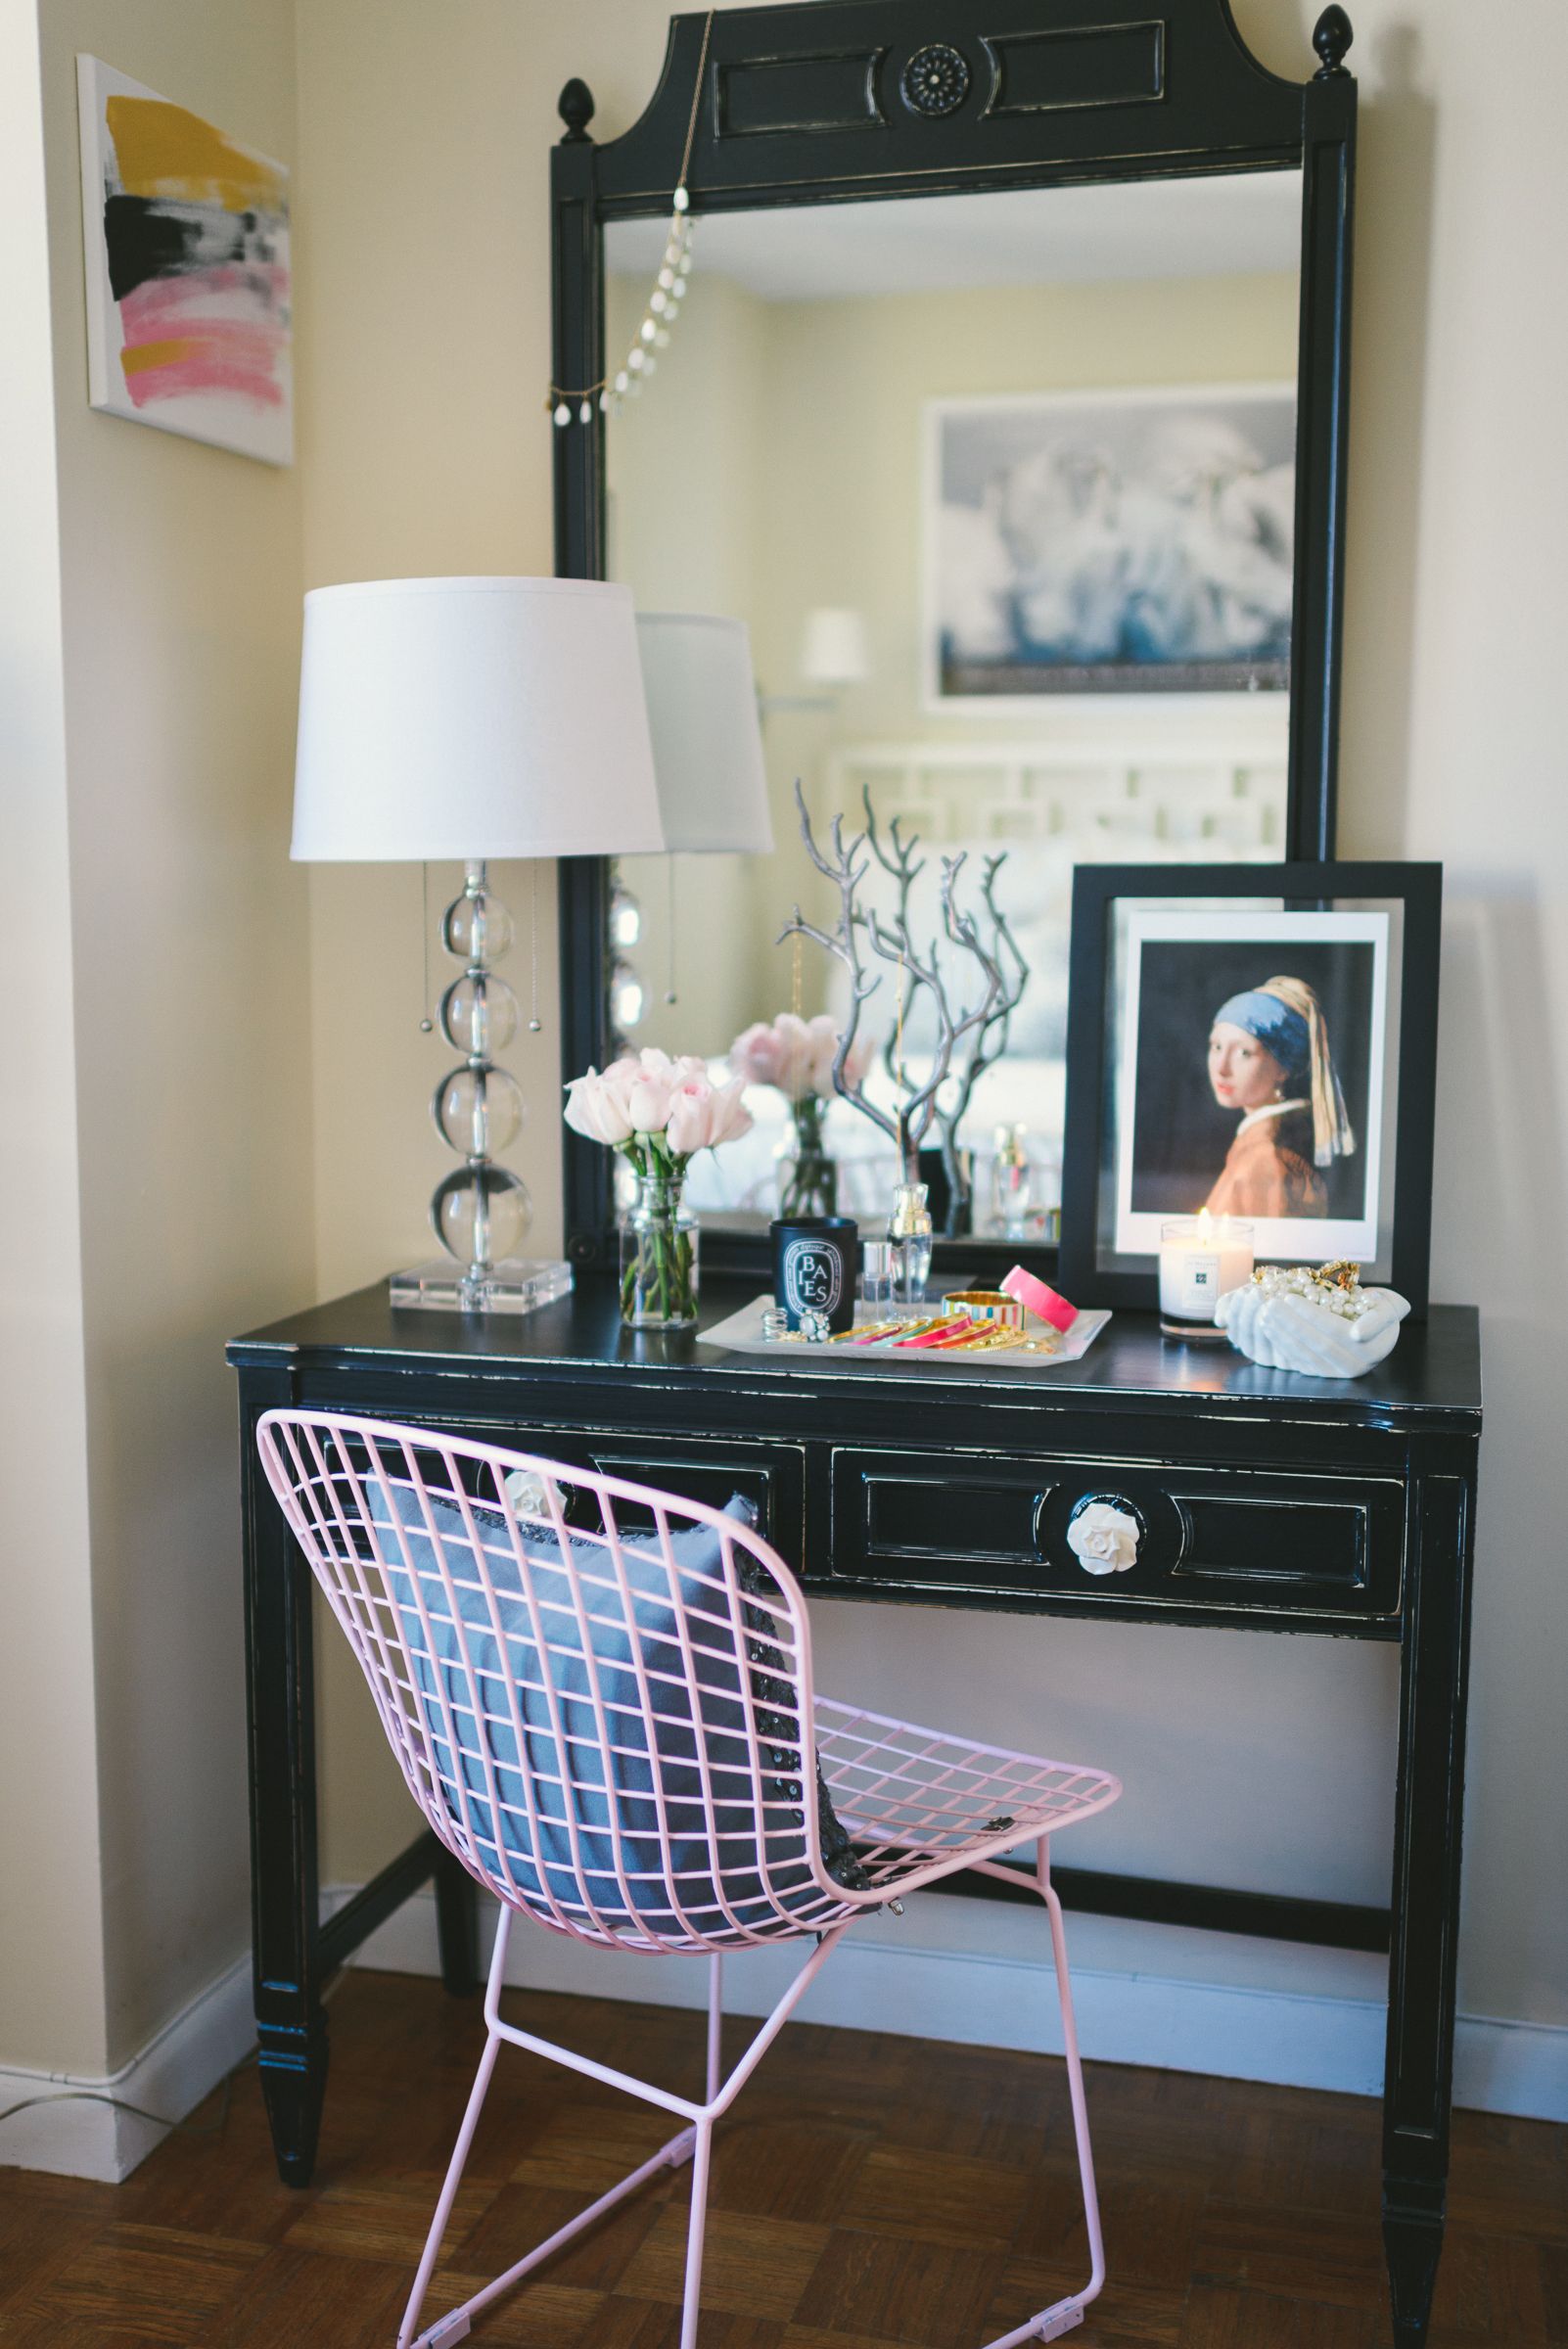 Chiếc bàn kết hợp khung gương màu đen cho cảm giác trầm ấm sang trọng, tương phản với chiếc ghế phun sơn màu hồng điệu đà.